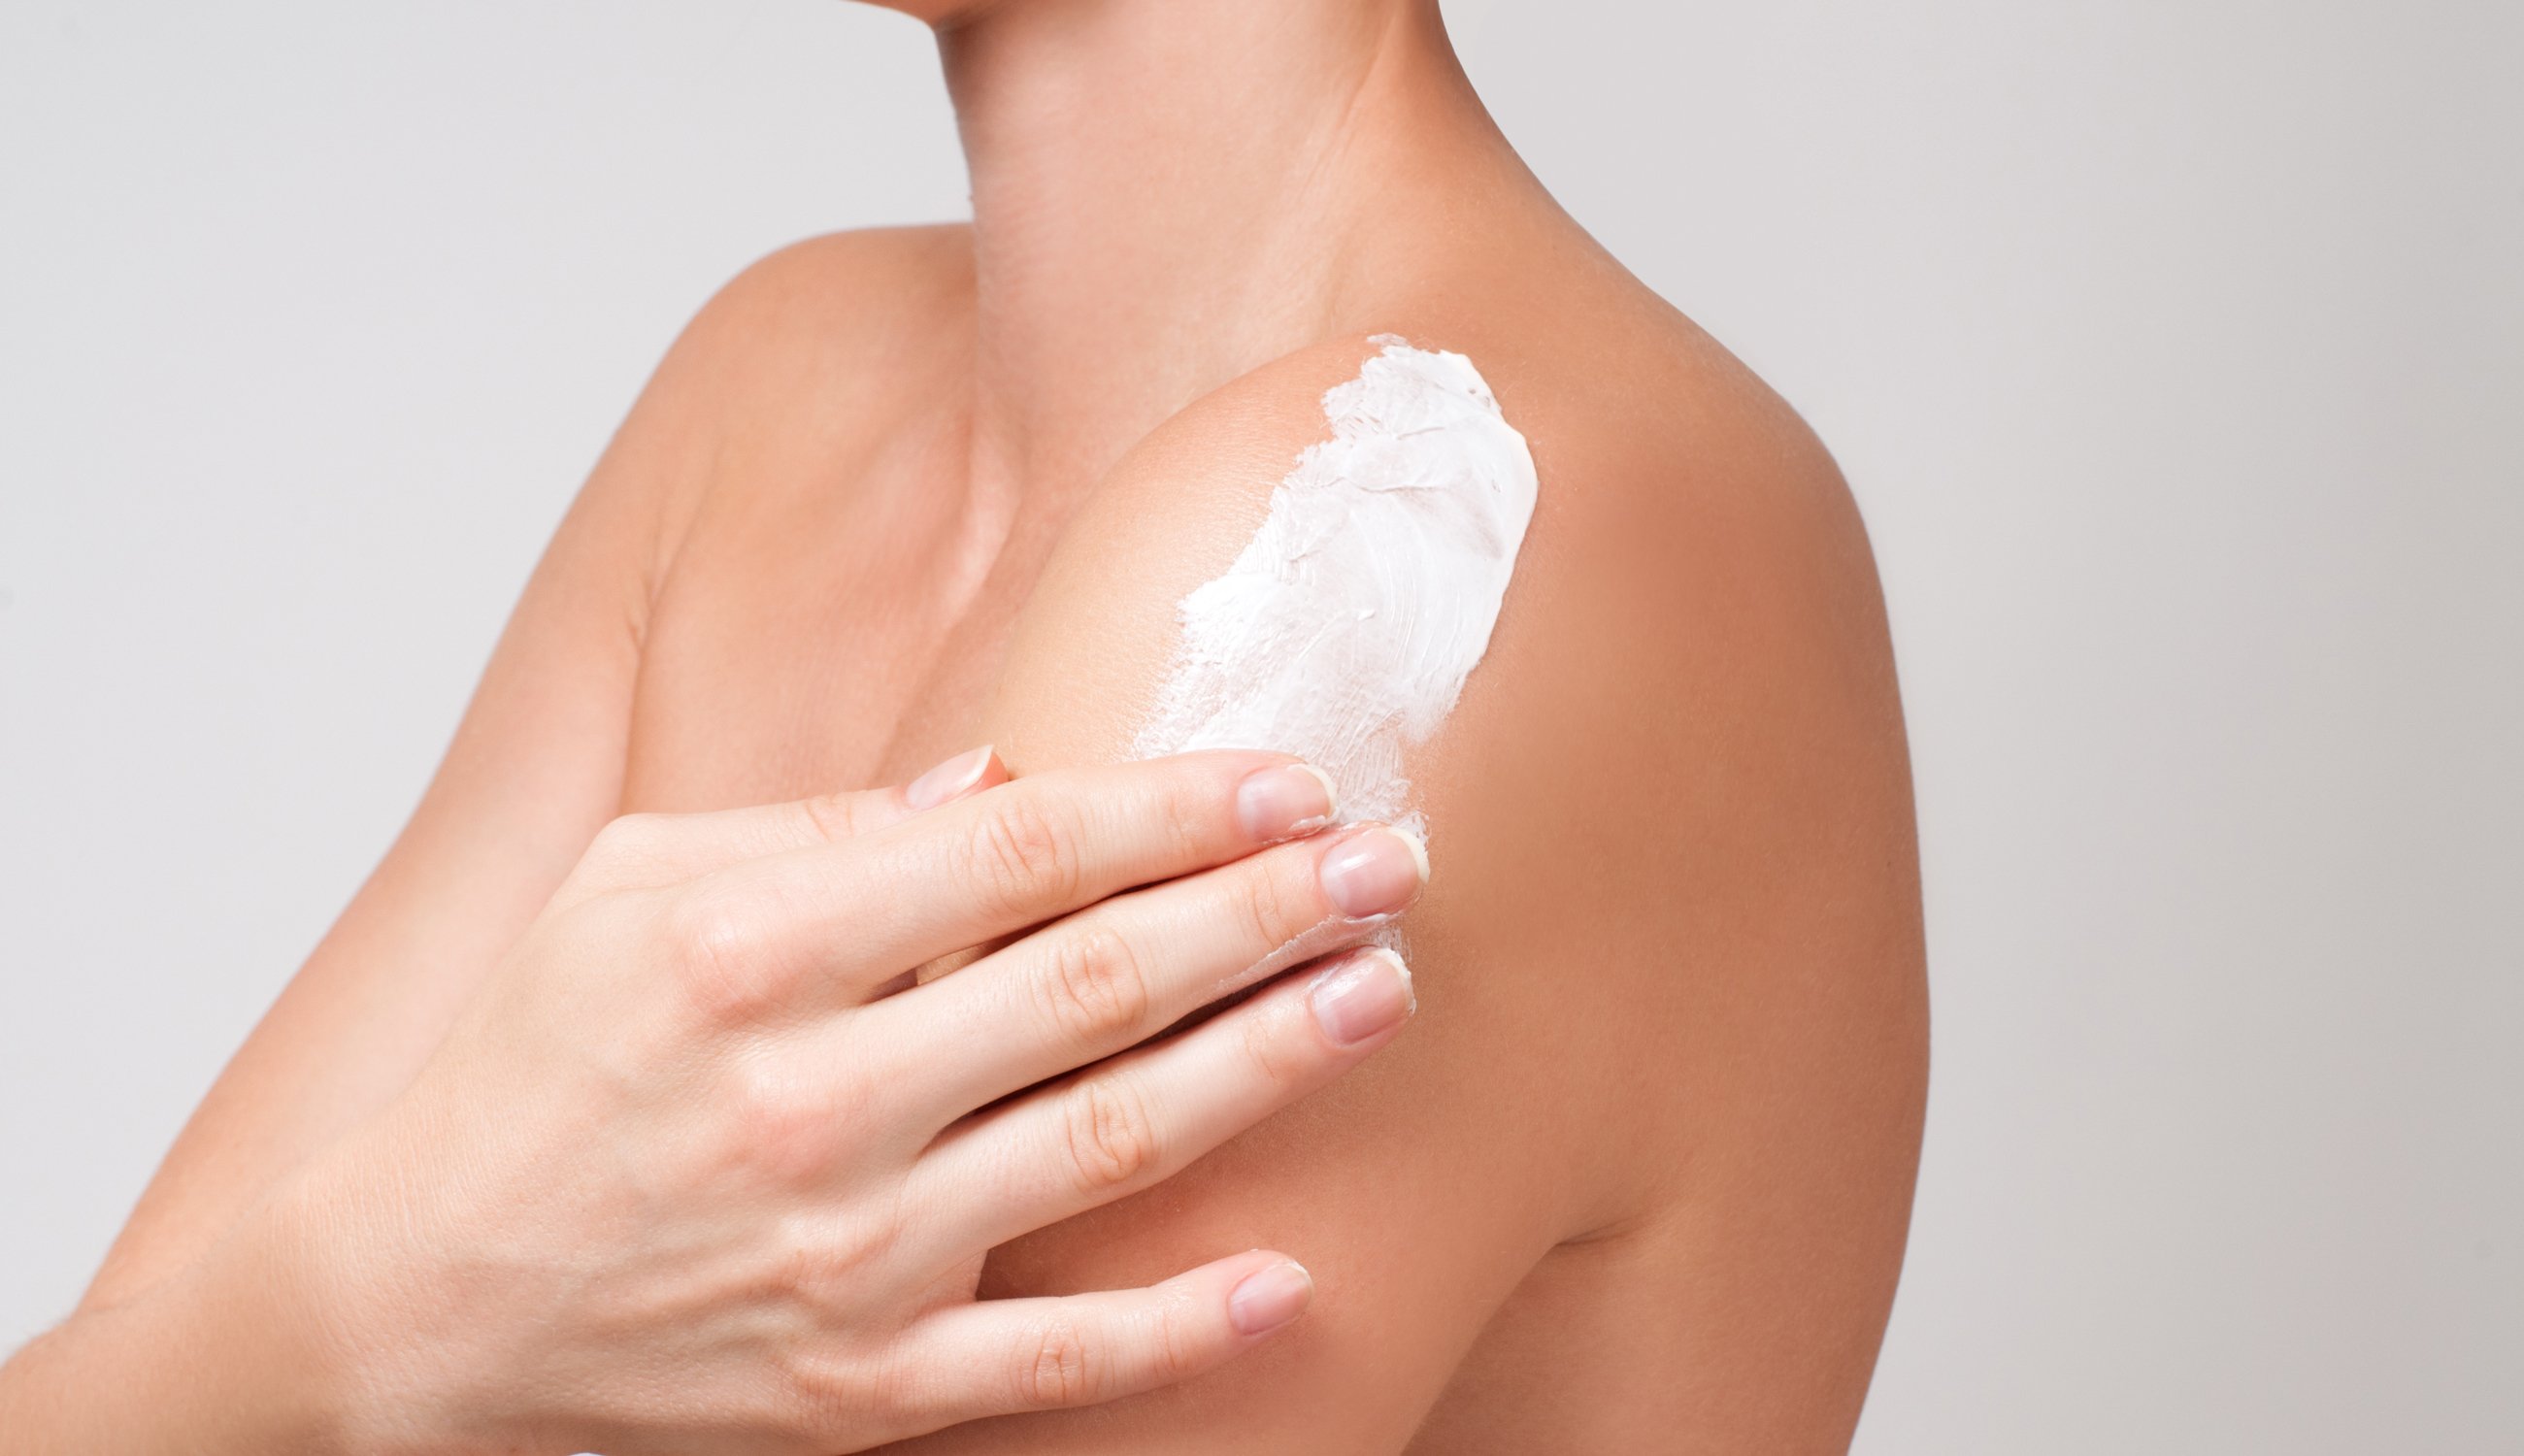 10 Regeln der Körperpflege. Pflegen Sie Ihre Körperhaut sorgsam!